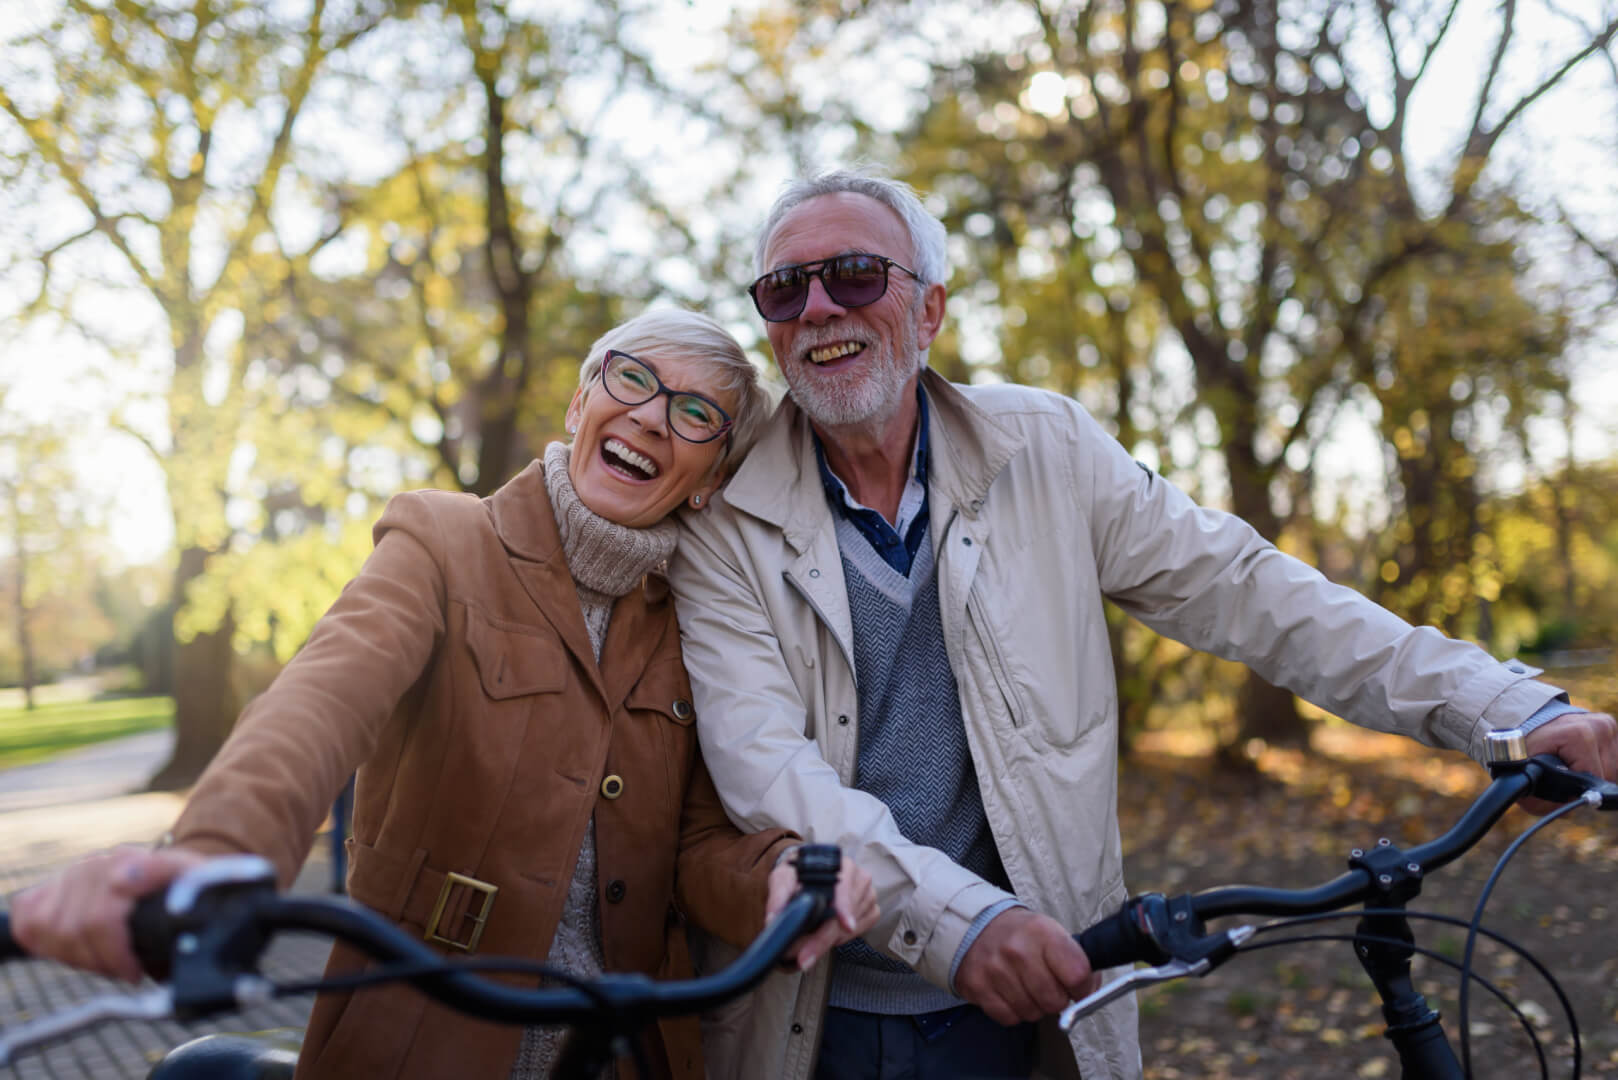 En la imagen aparecen un matrimonio de dos personas mayores riendo y montando en bicicleta en un parque en un claro gesto de vitalidad de las nuevas generaciones de la tercera edad.